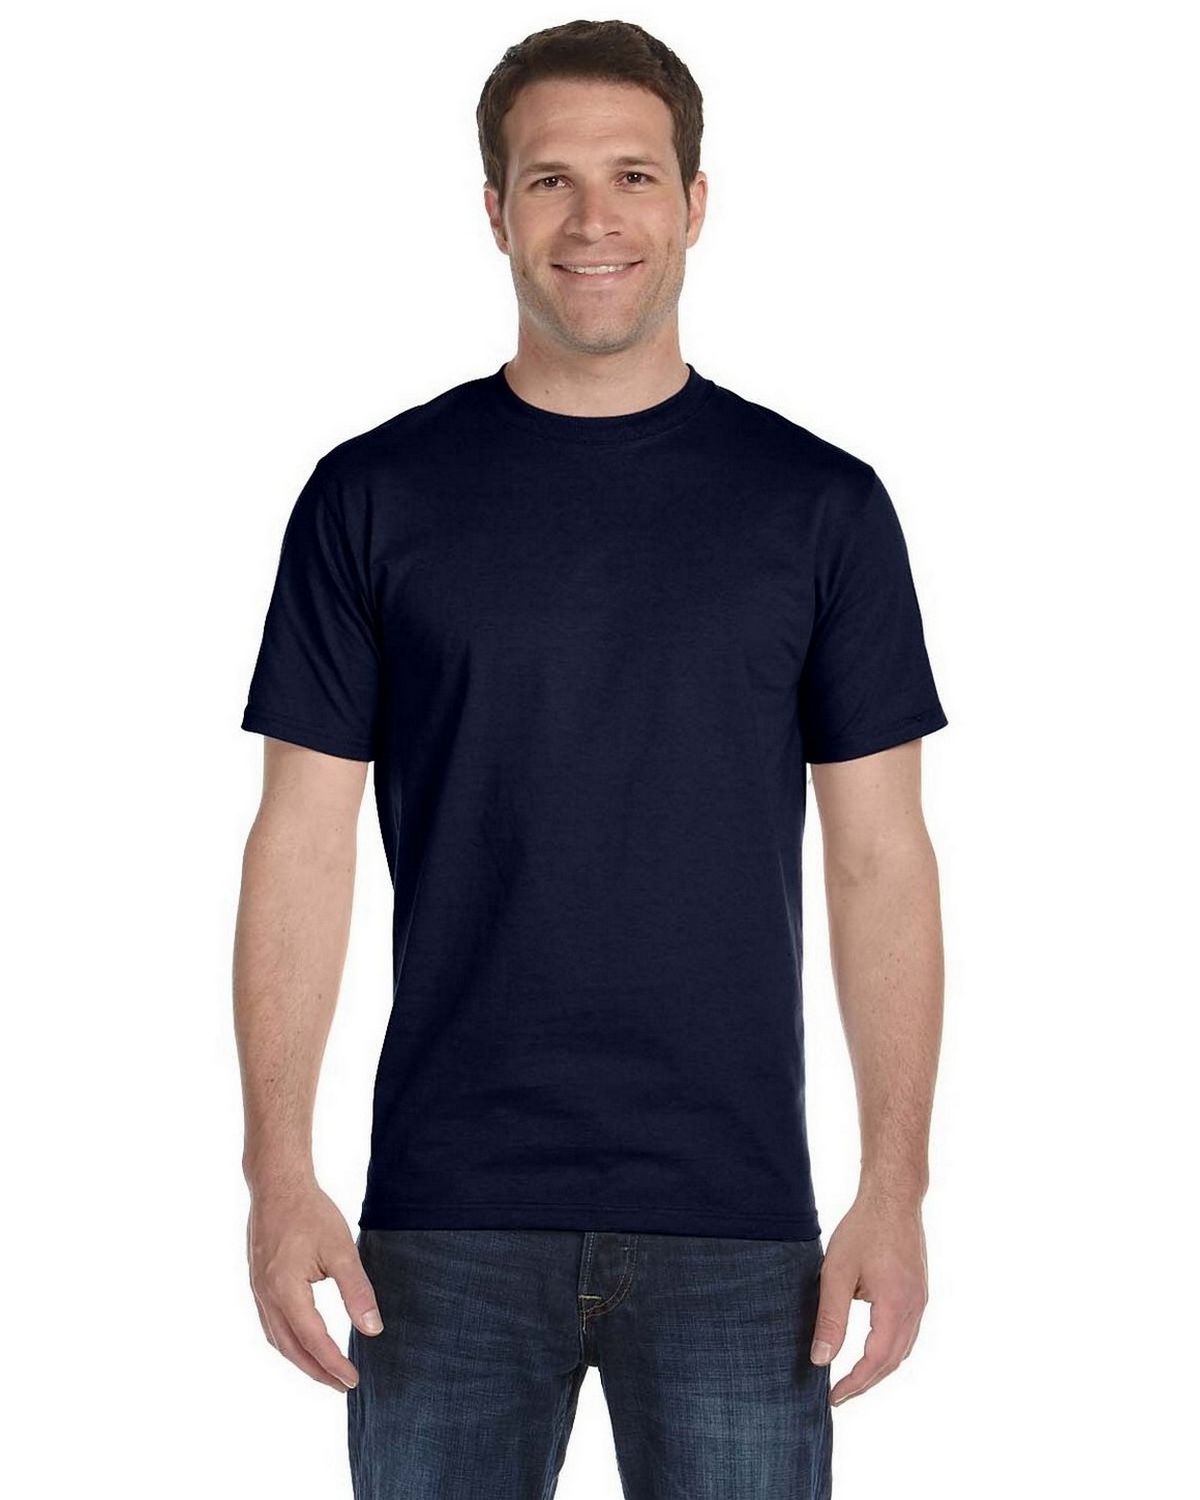 Hanes 5280 100% Comfort Soft Cotton T Shirt - ApparelnBags.com